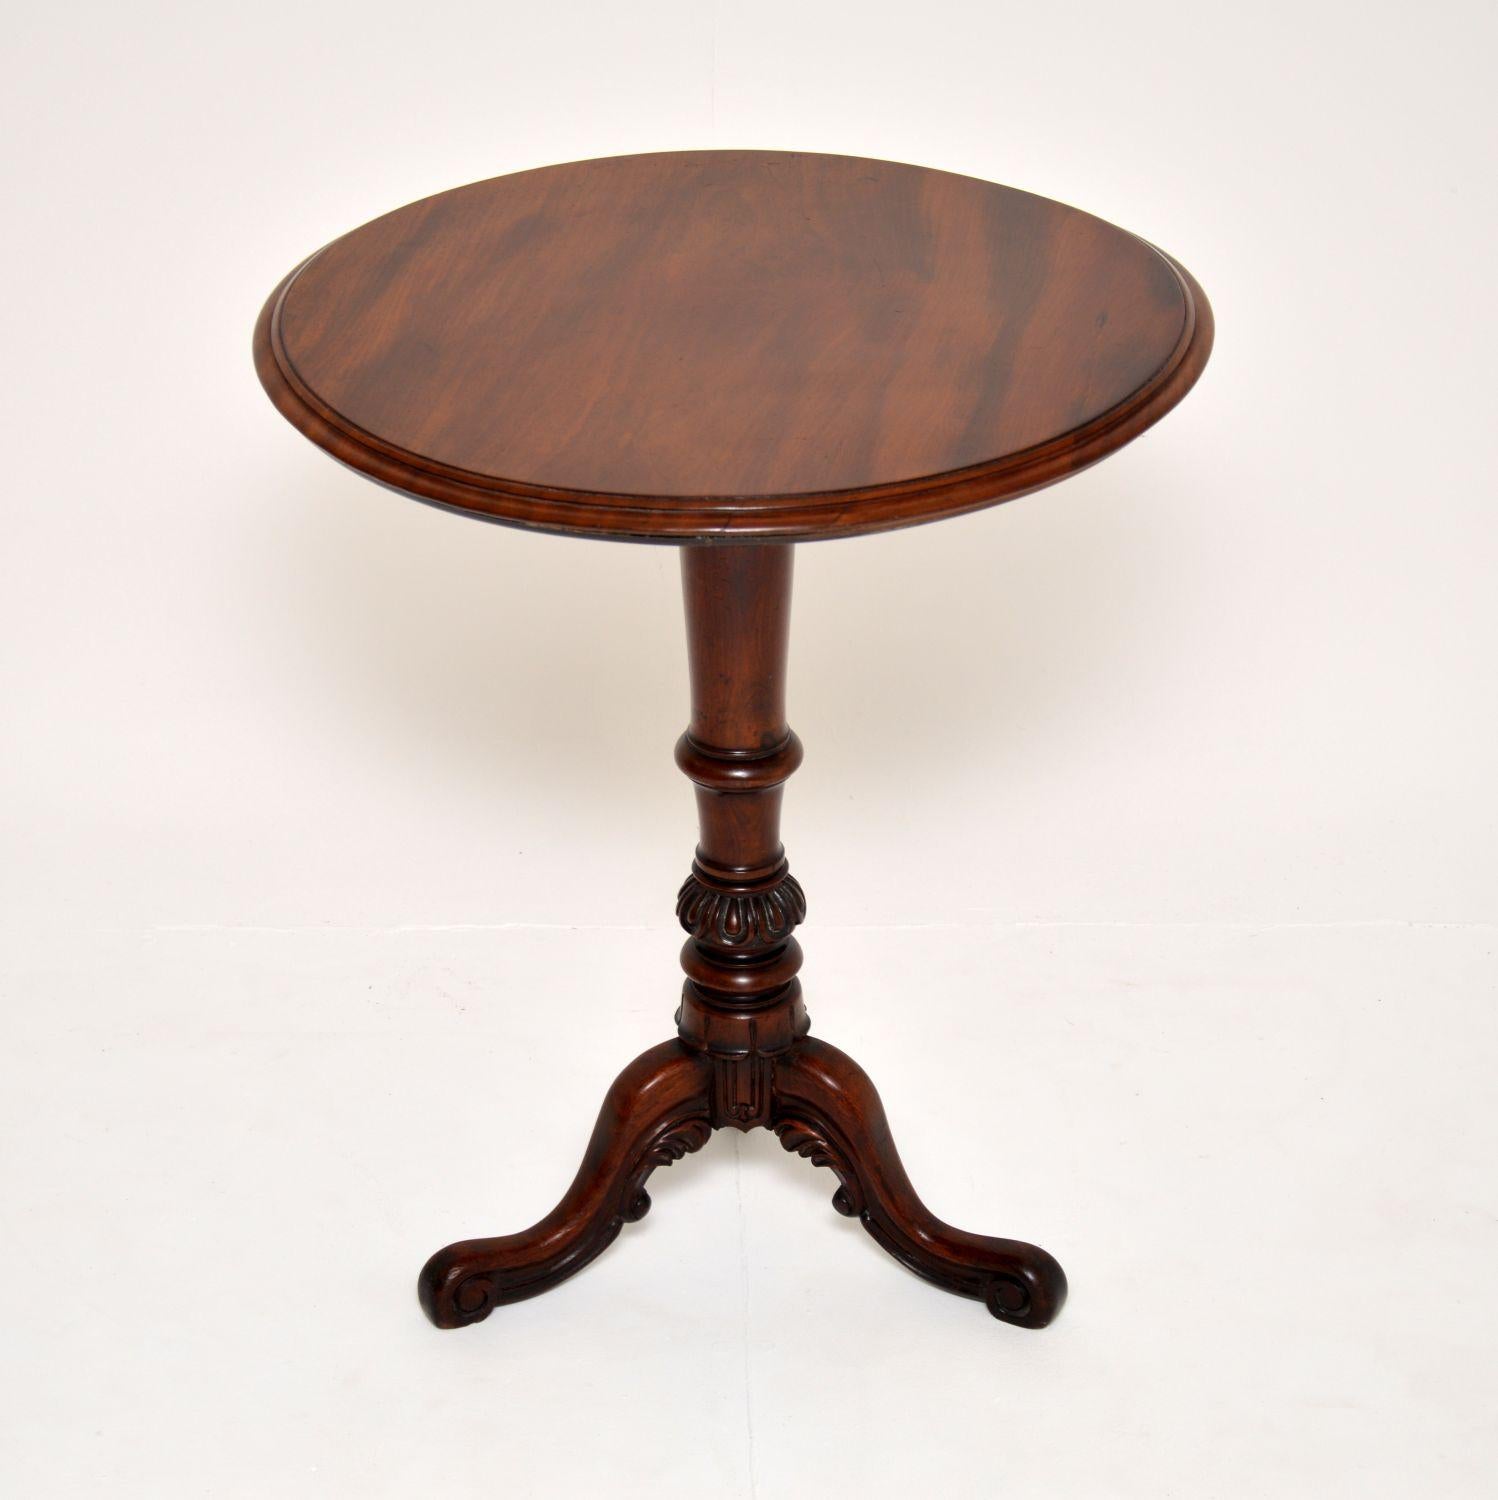 Une fantastique table d'appoint d'époque William IV. Fabriqué en Angleterre, il date de la période 1830-1840.

Il est d'une qualité étonnante, avec un design très solide et audacieux. La base de la colonne centrale est magnifiquement sculptée et